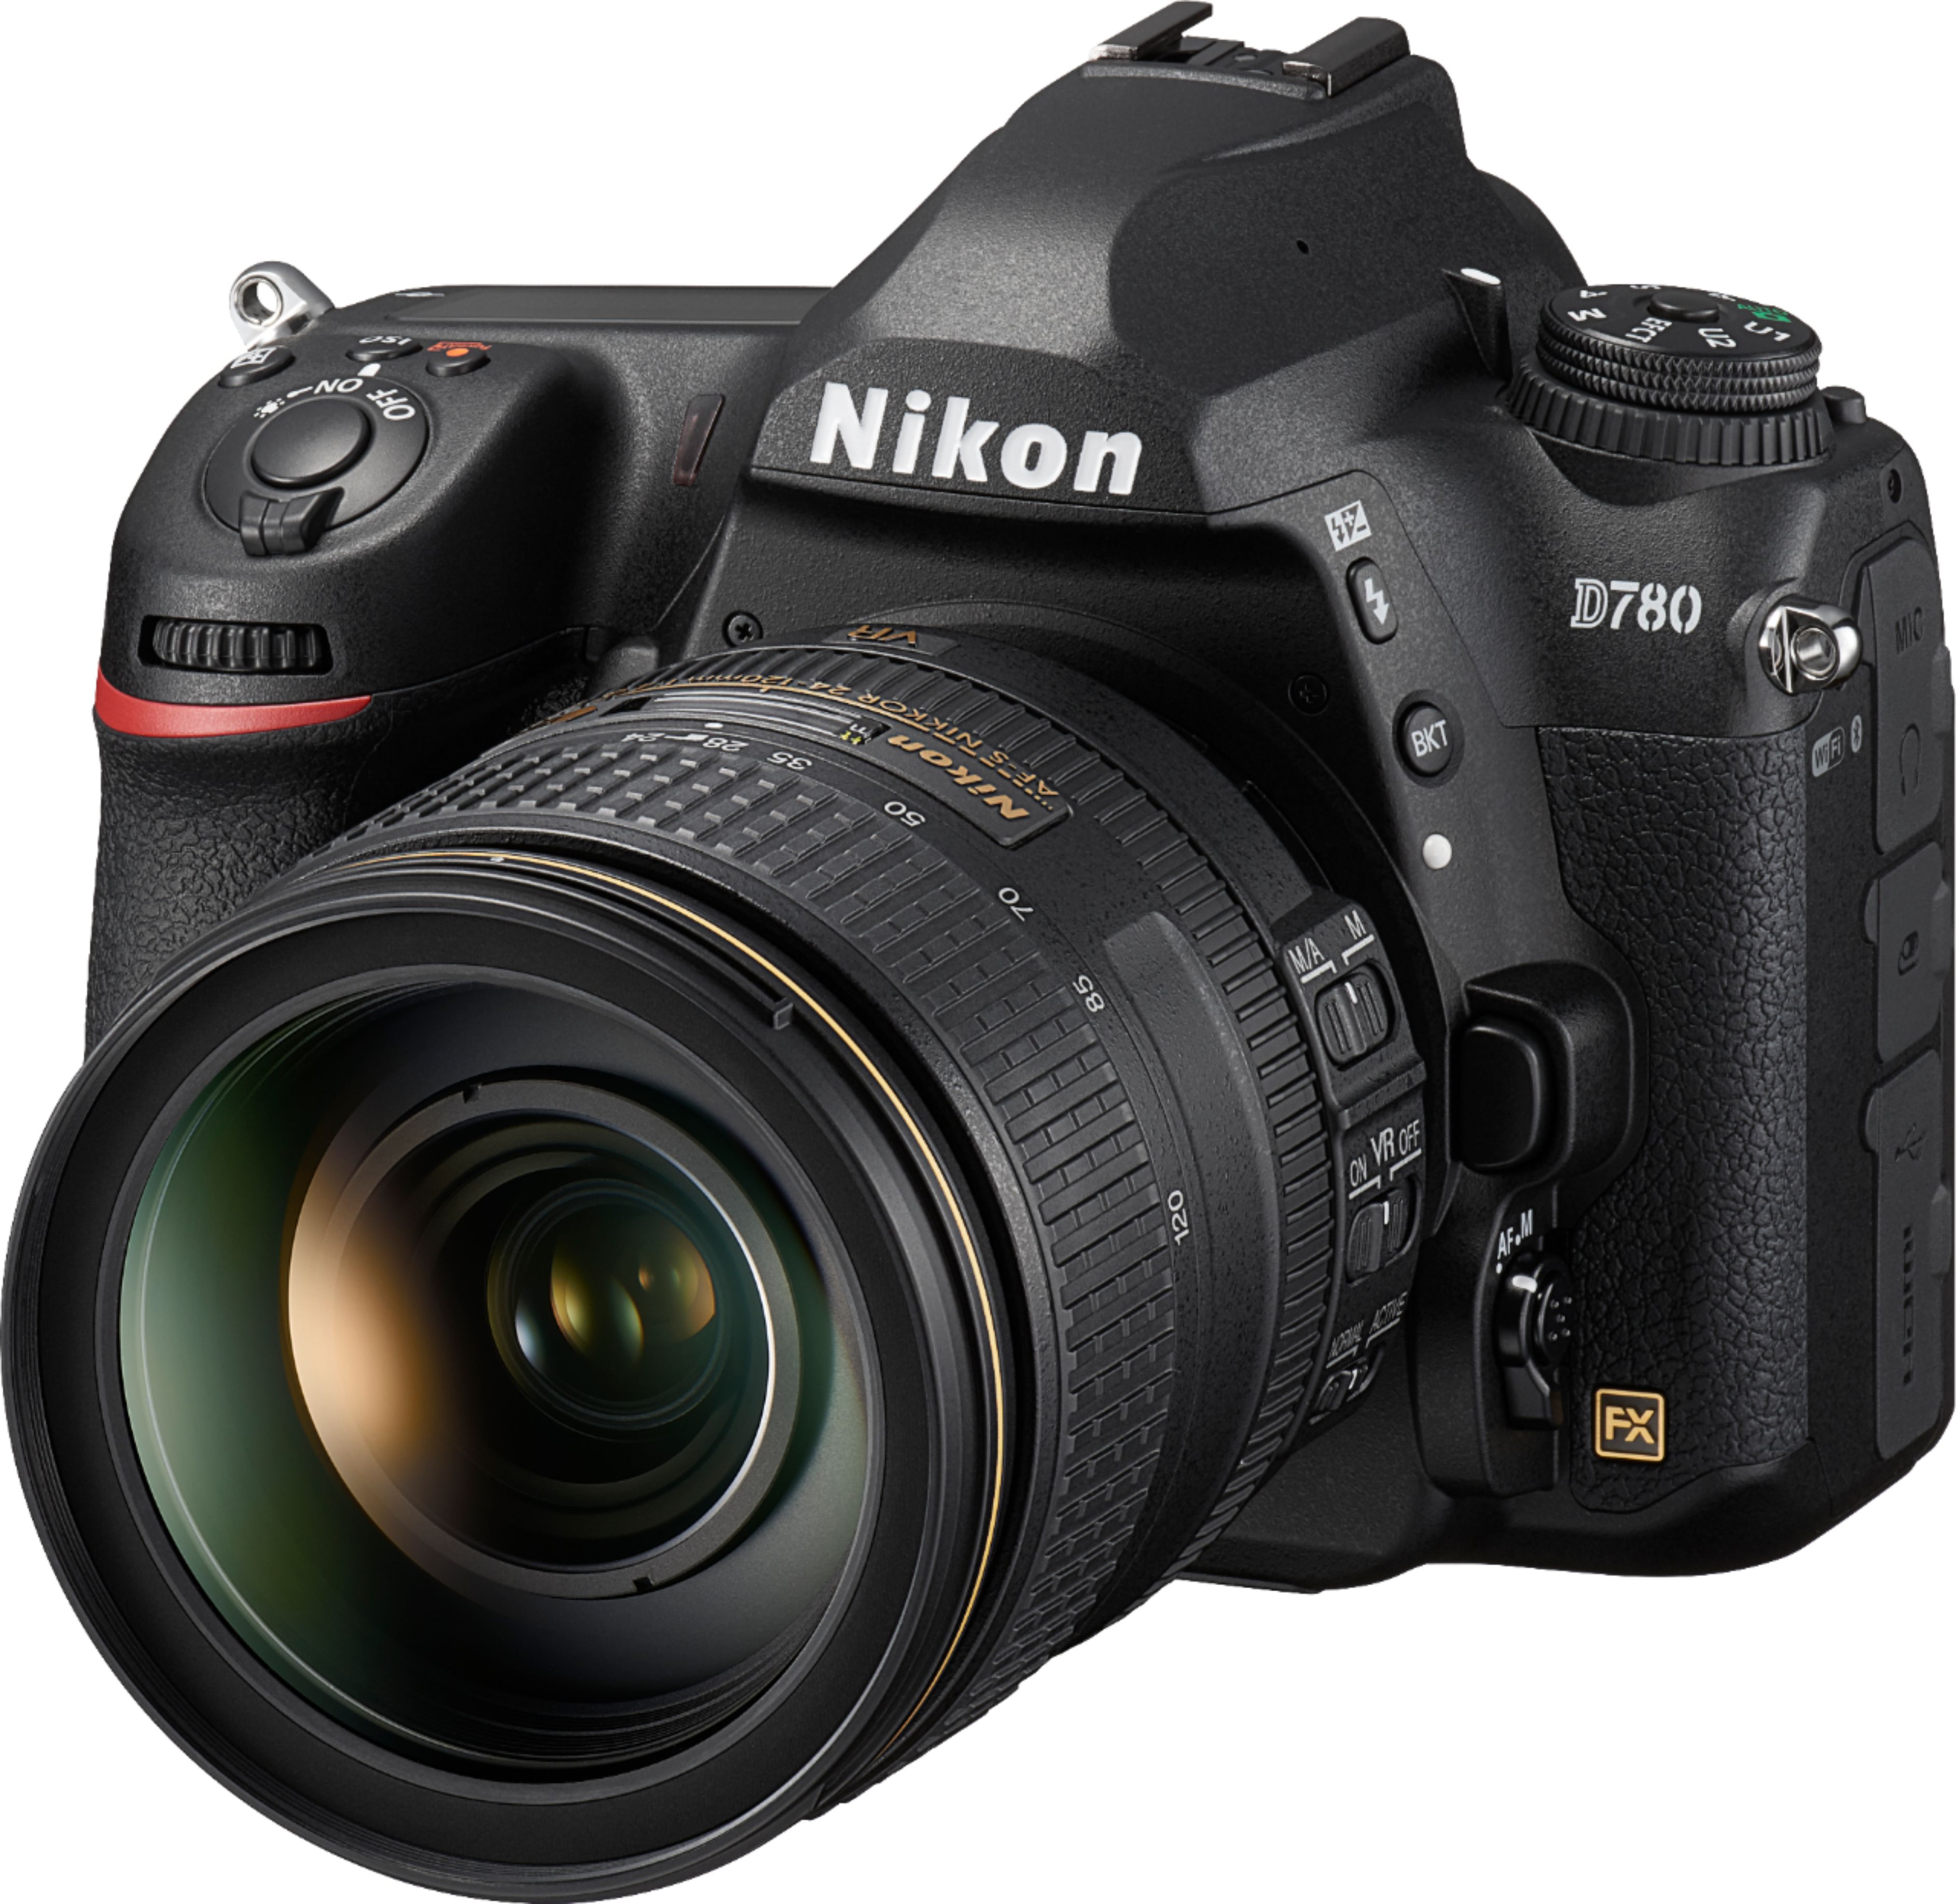 Nikon D780 DSLR 4K Video Camera with 24-120mm Lens Black 1619 - Best Buy